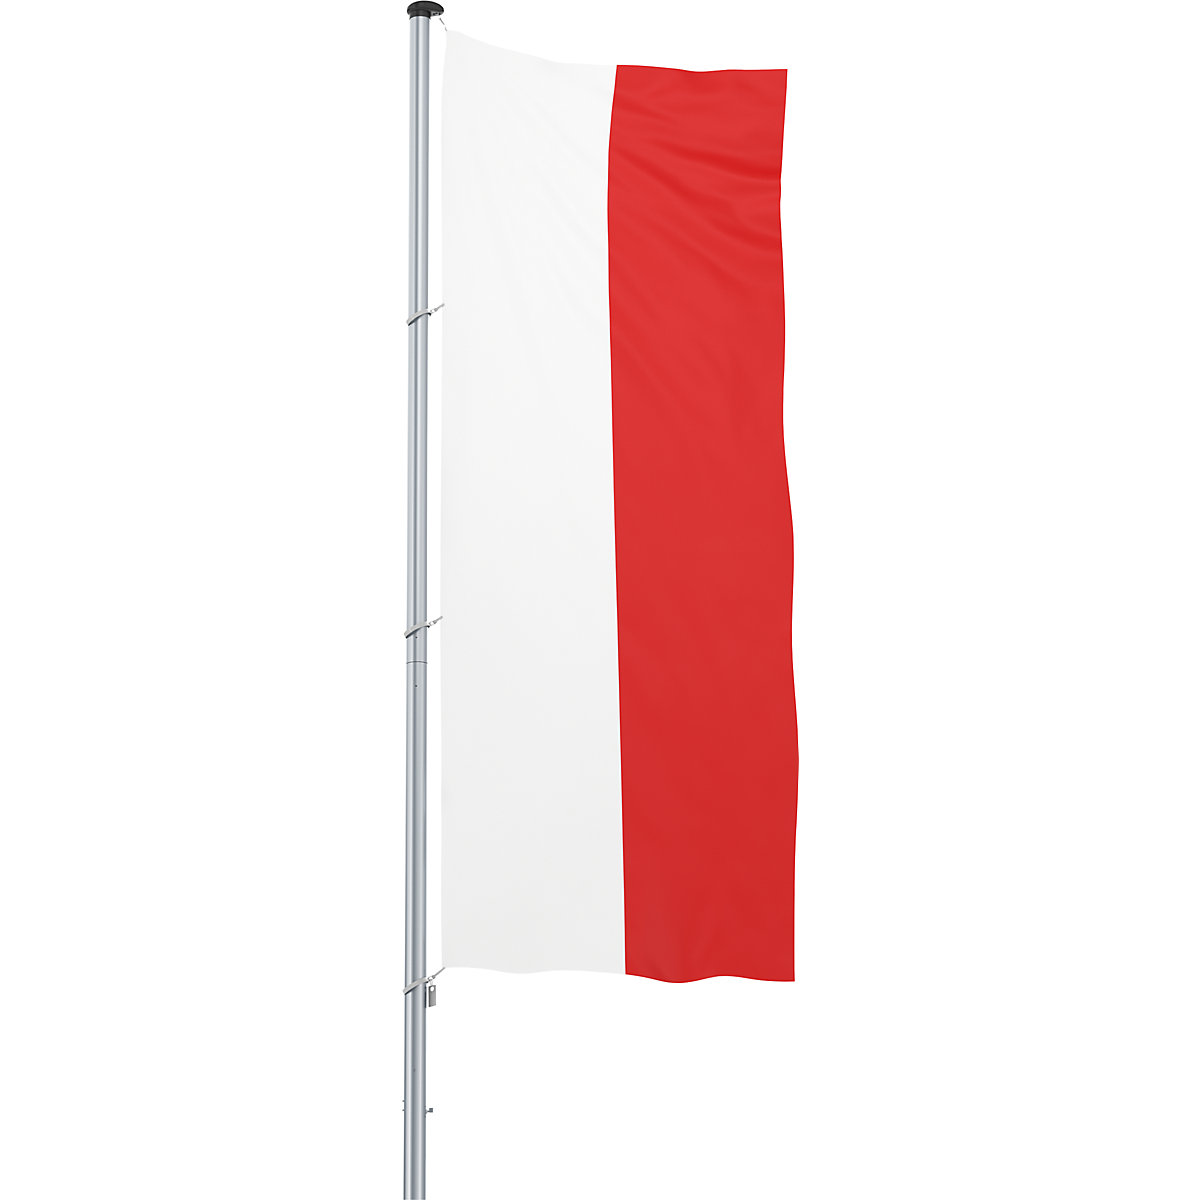 Bandeira para içar/bandeira nacional – Mannus, formato 1,2 x 3 m, Polónia-19